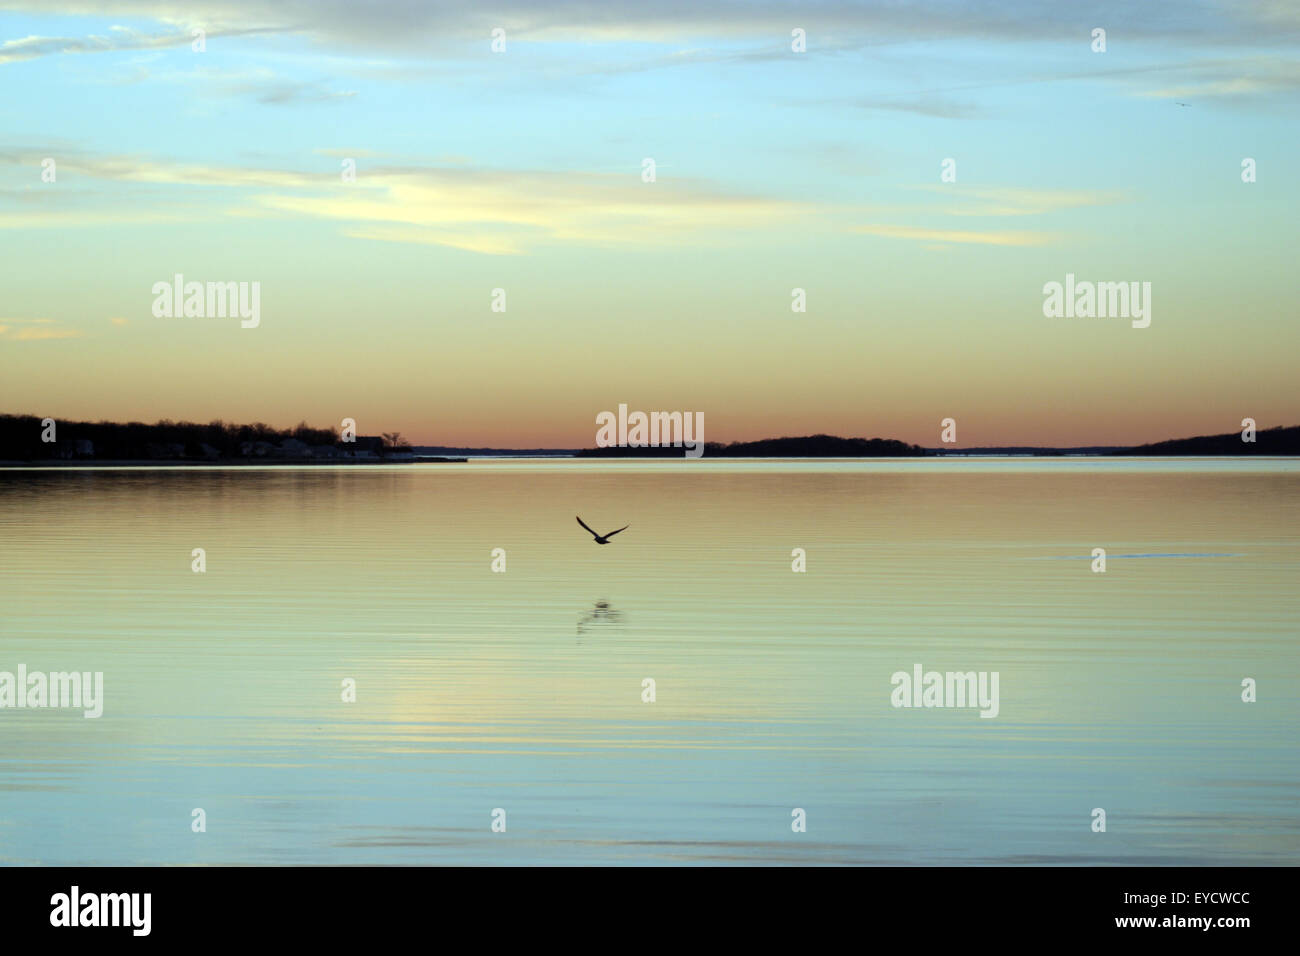 Una solitaria di uccello vola basso su una baia ancora al tramonto. Colori pastello in un cielo invernale gamma da rosa a blu chiaro. Foto Stock